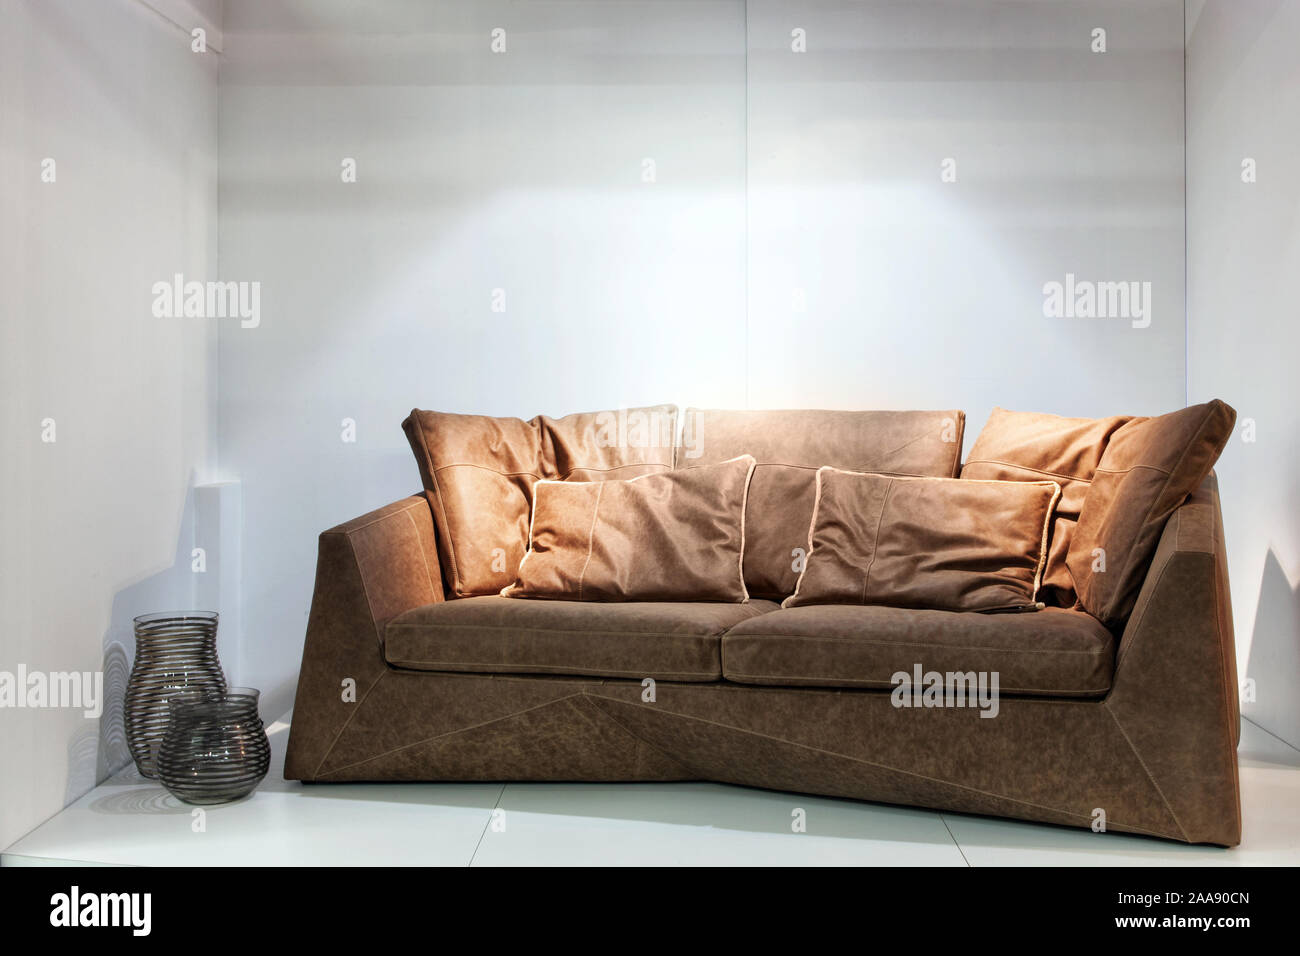 Braunes Leder Sofa in einem hellen Raum. Real Photo Stockfotografie - Alamy